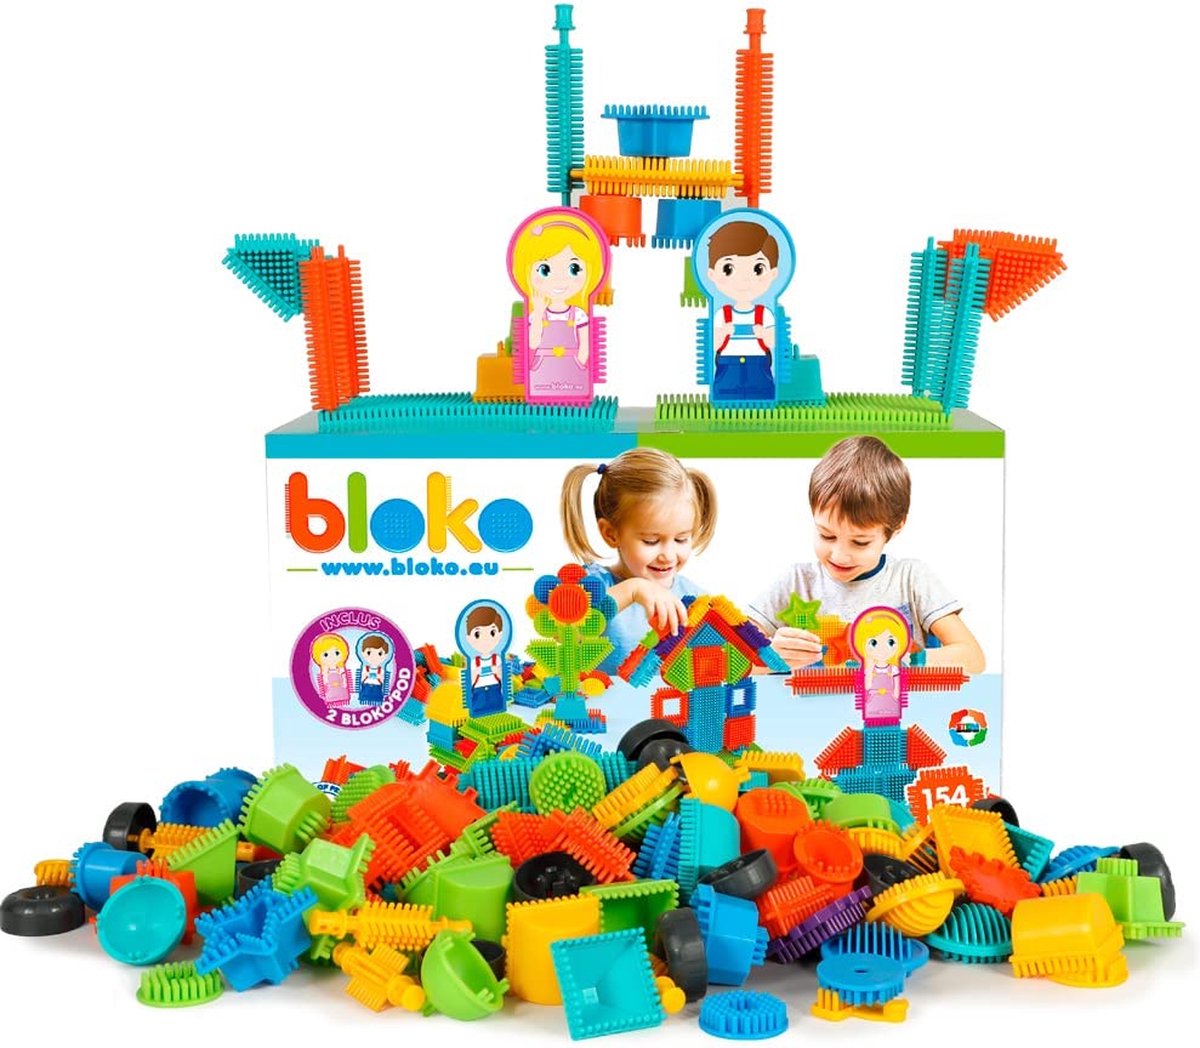 Bloko - Boite de base (100 pièces)